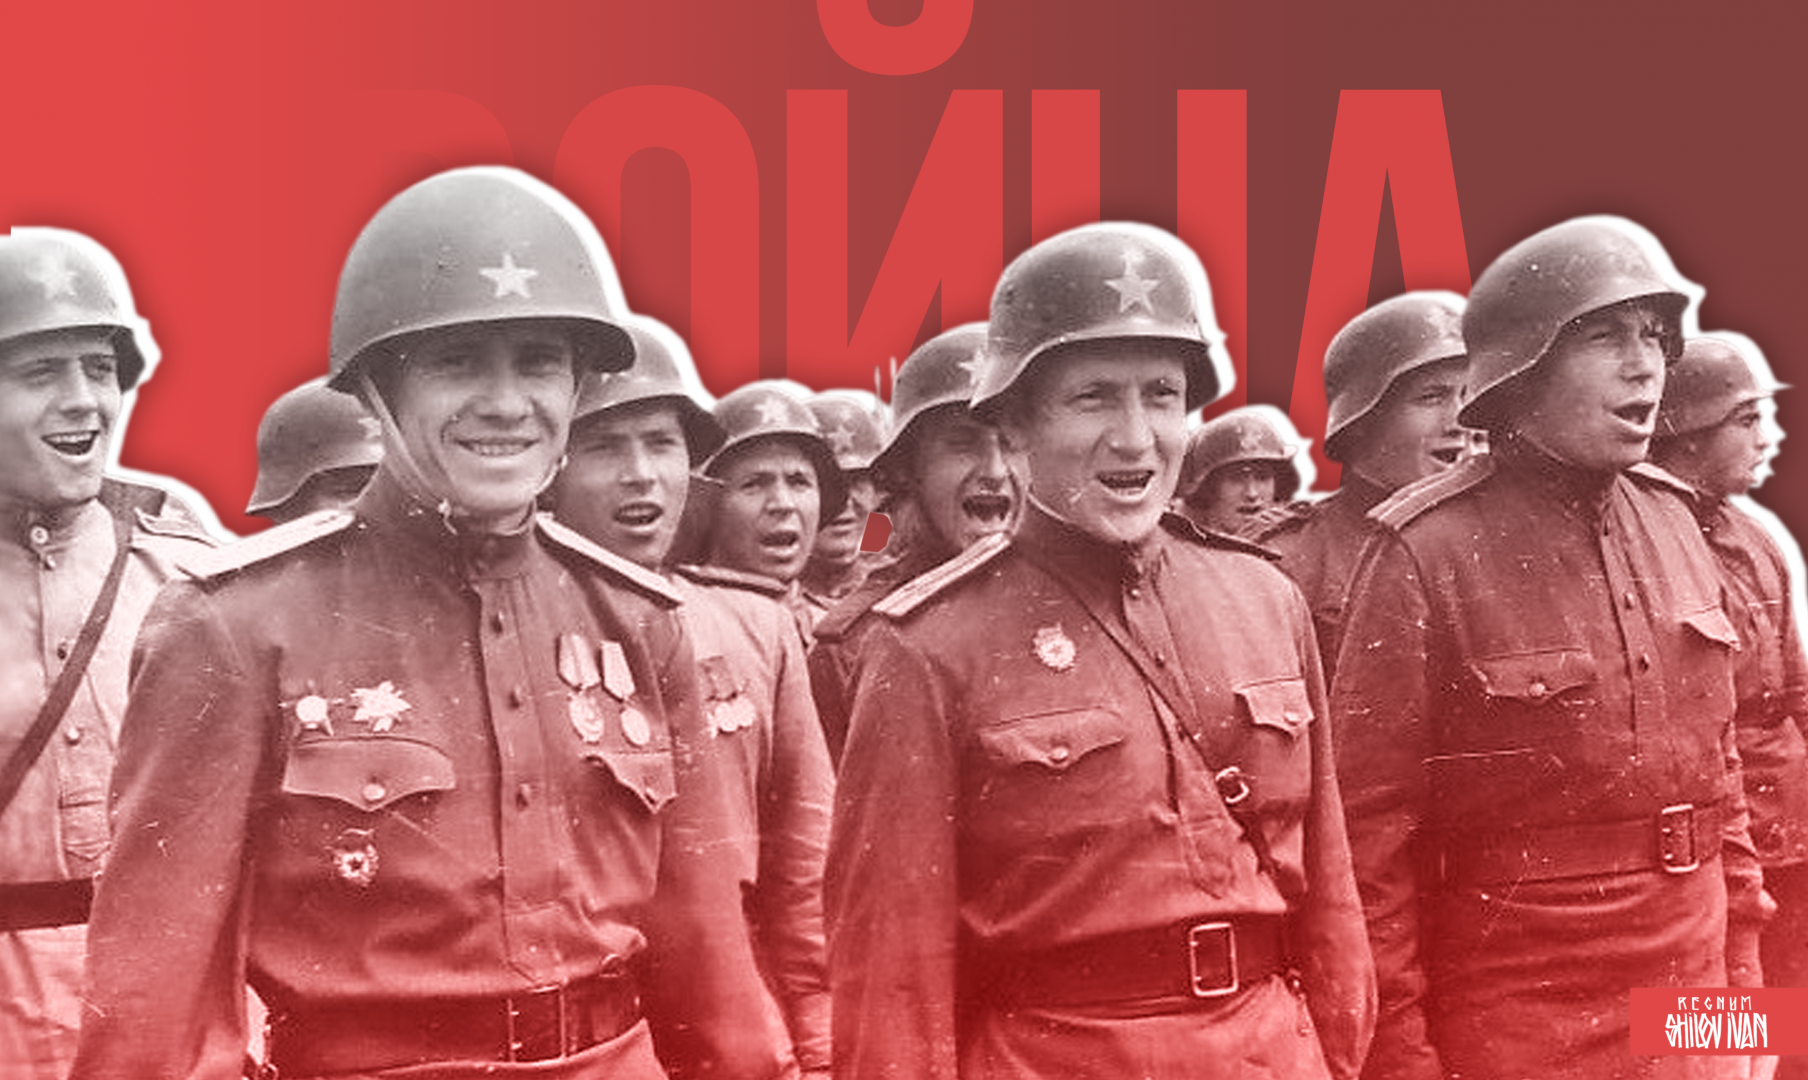 Война: Москва 1941—1945 гг. Радио REGNUM